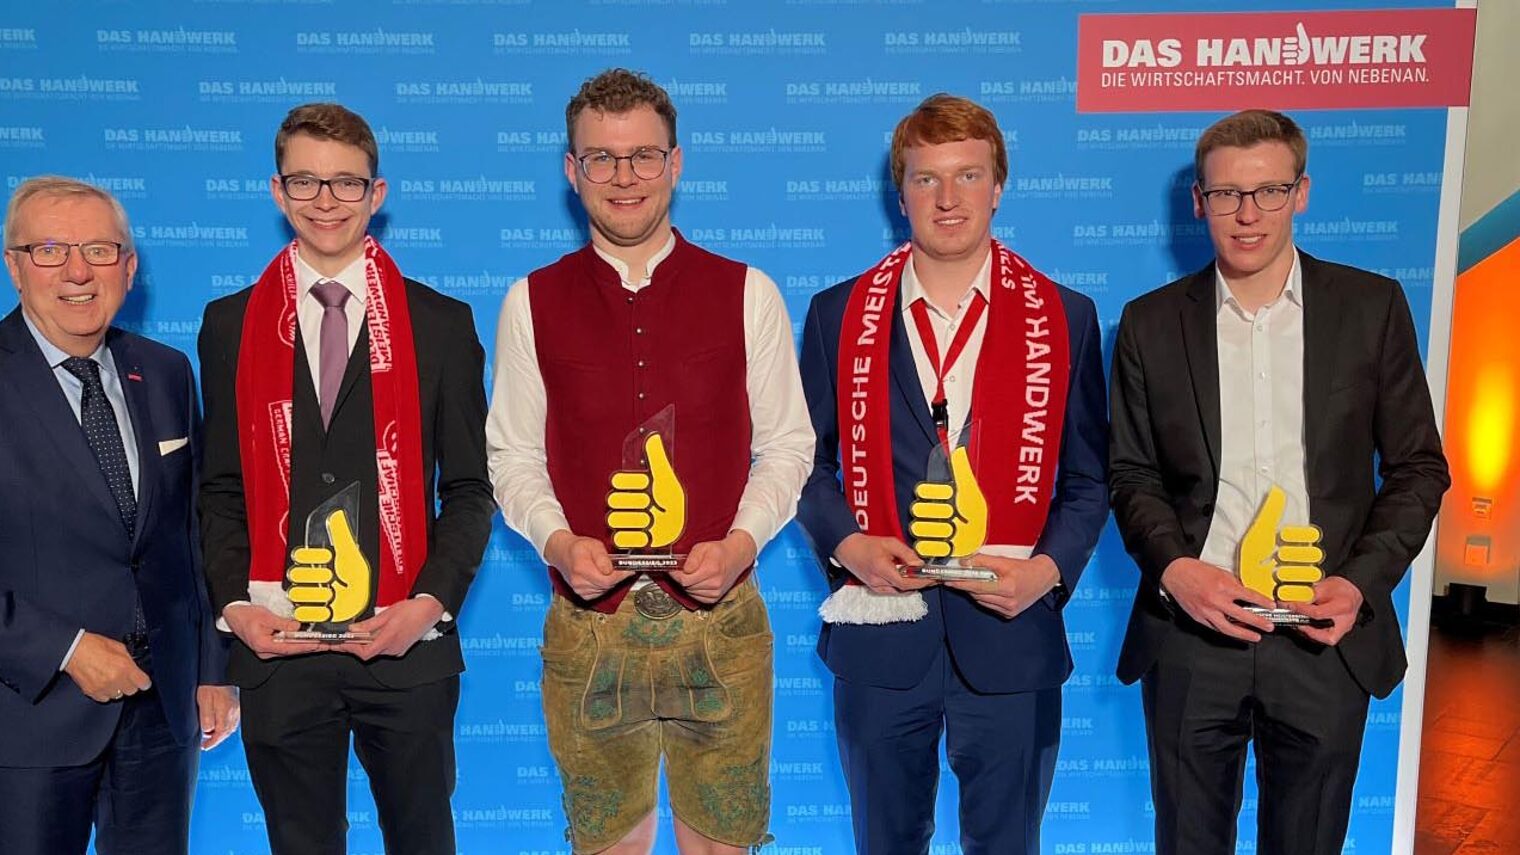 Die vier Bundessieger halten ihre Auszeizeichnung in der Hand. 